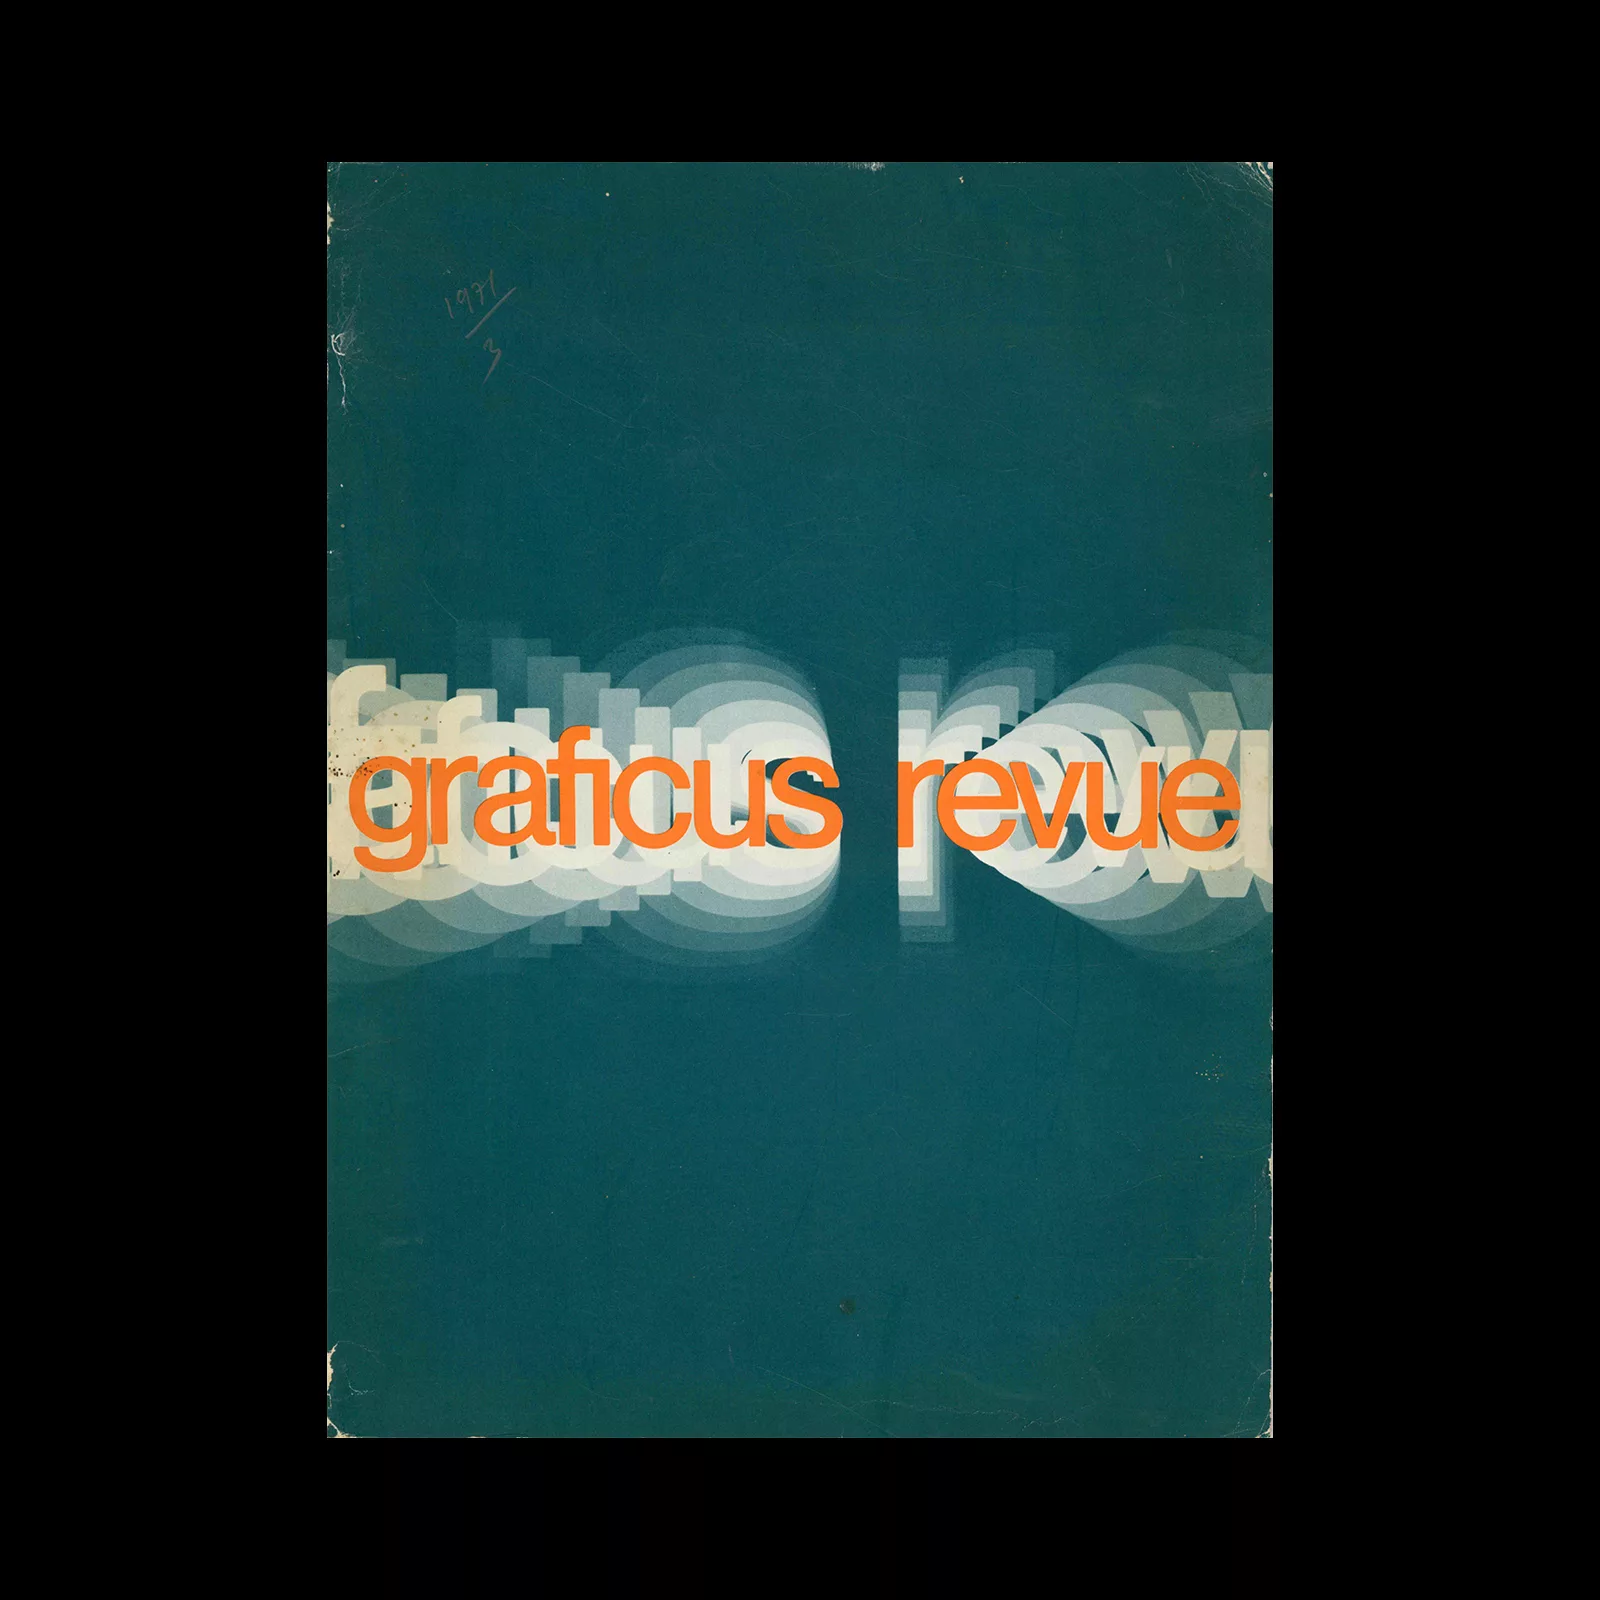 Graficus Revue, 03, August 1971. Designed by Paul Mijksenaar